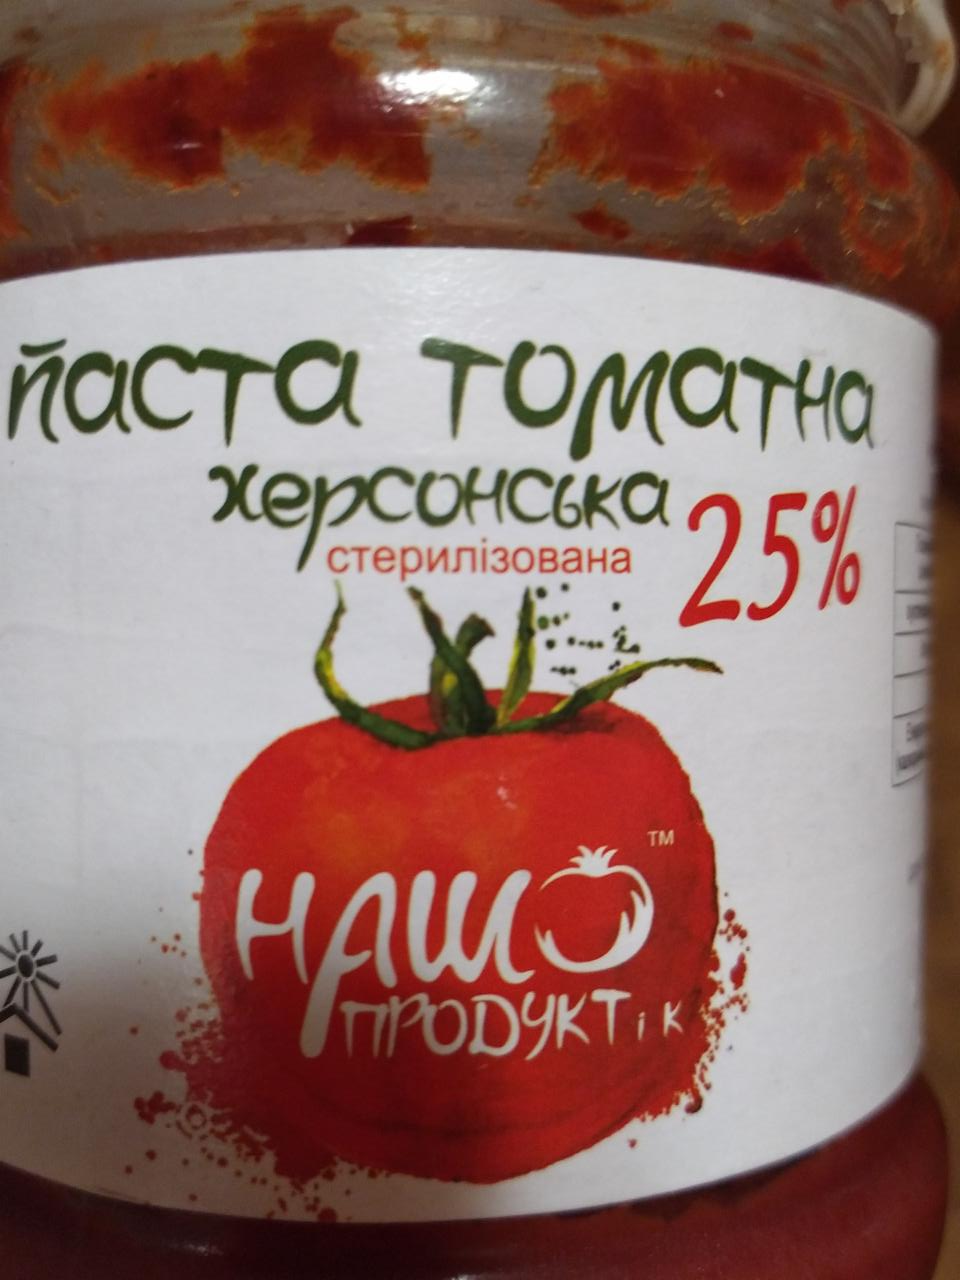 Фото - Паста томатна Херсонська 25% Наш продукт